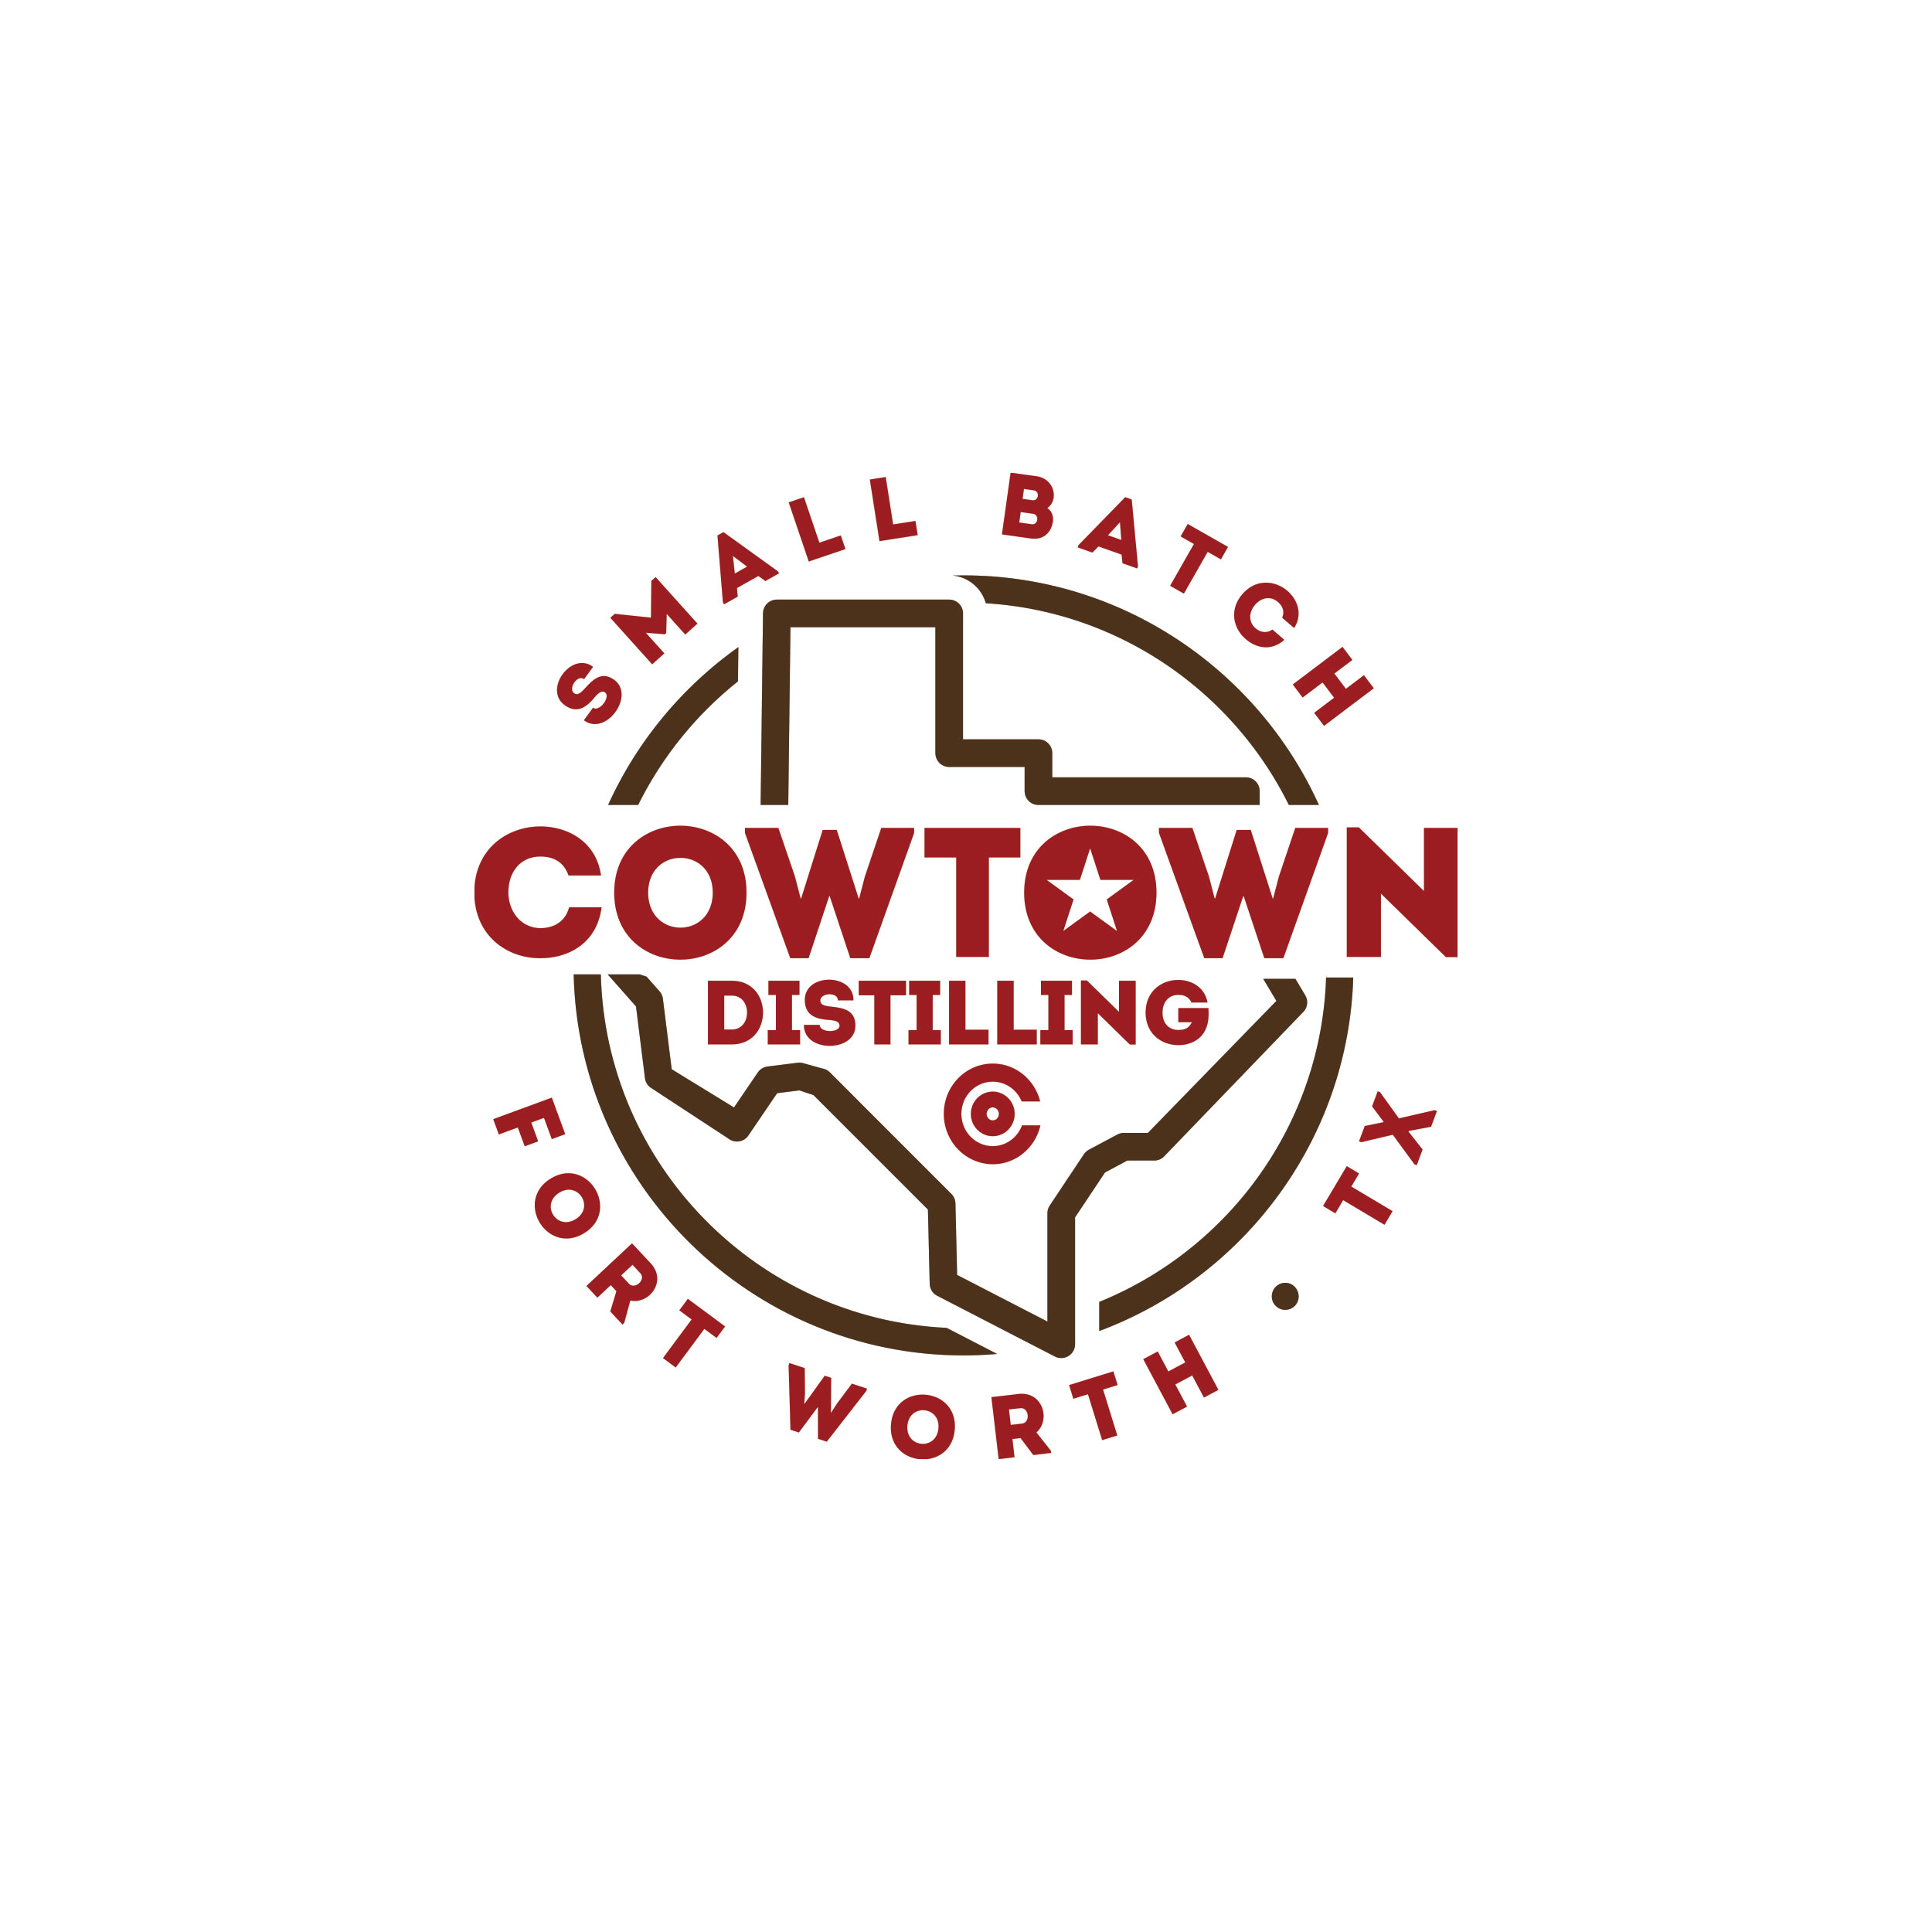 OldWestCreative_Work_Logos_CowtownDistillery